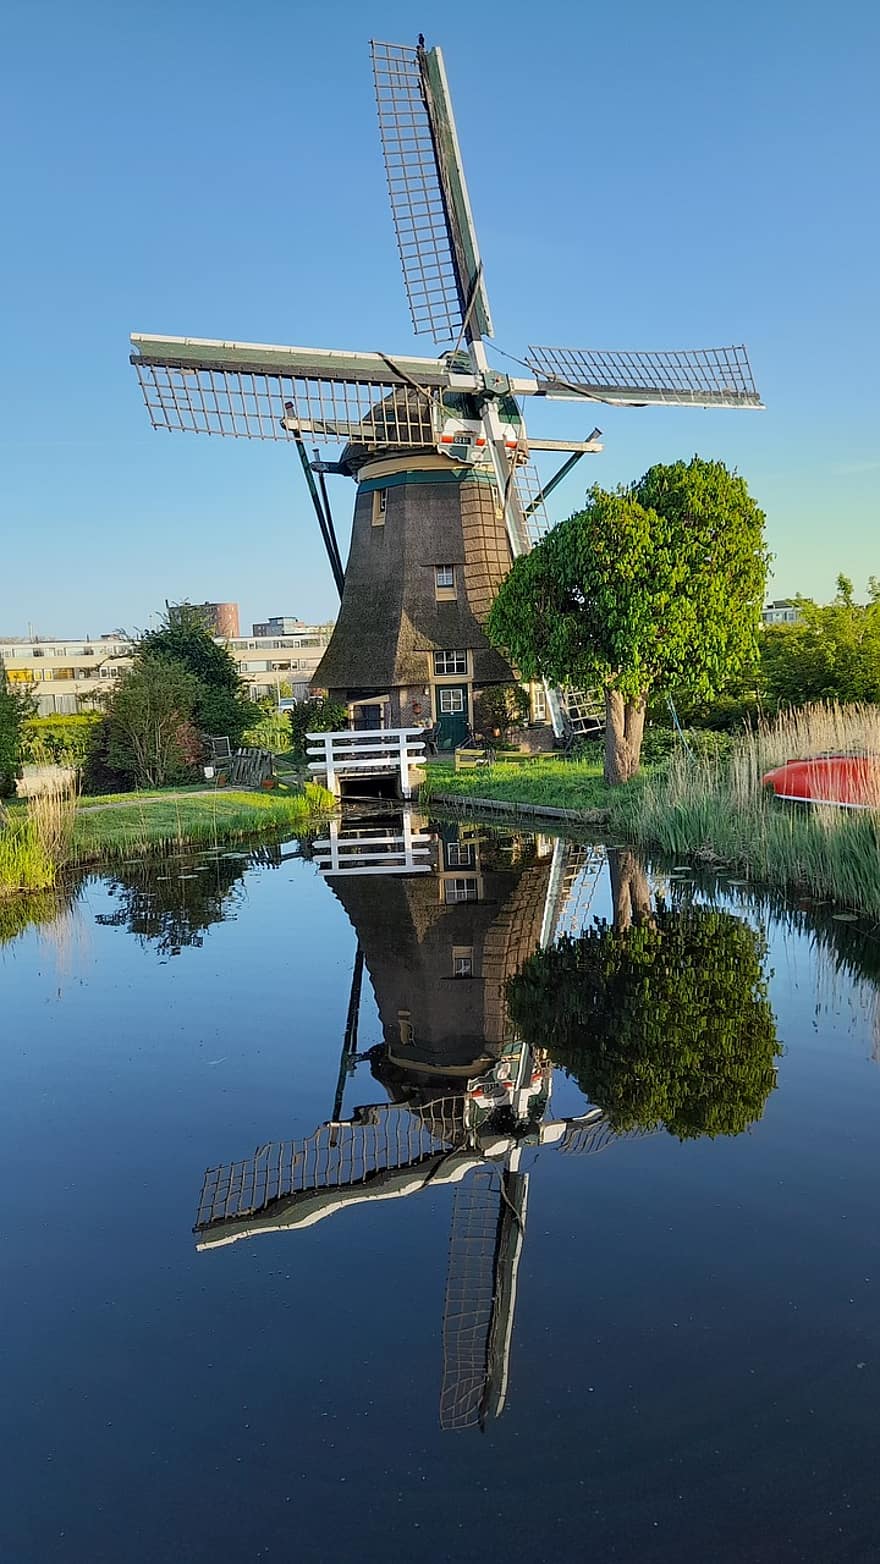 windmolen, Nederland, natuur, reflectie, energie, macht, water, landelijke scène, zomer, Bekende plek, culturen